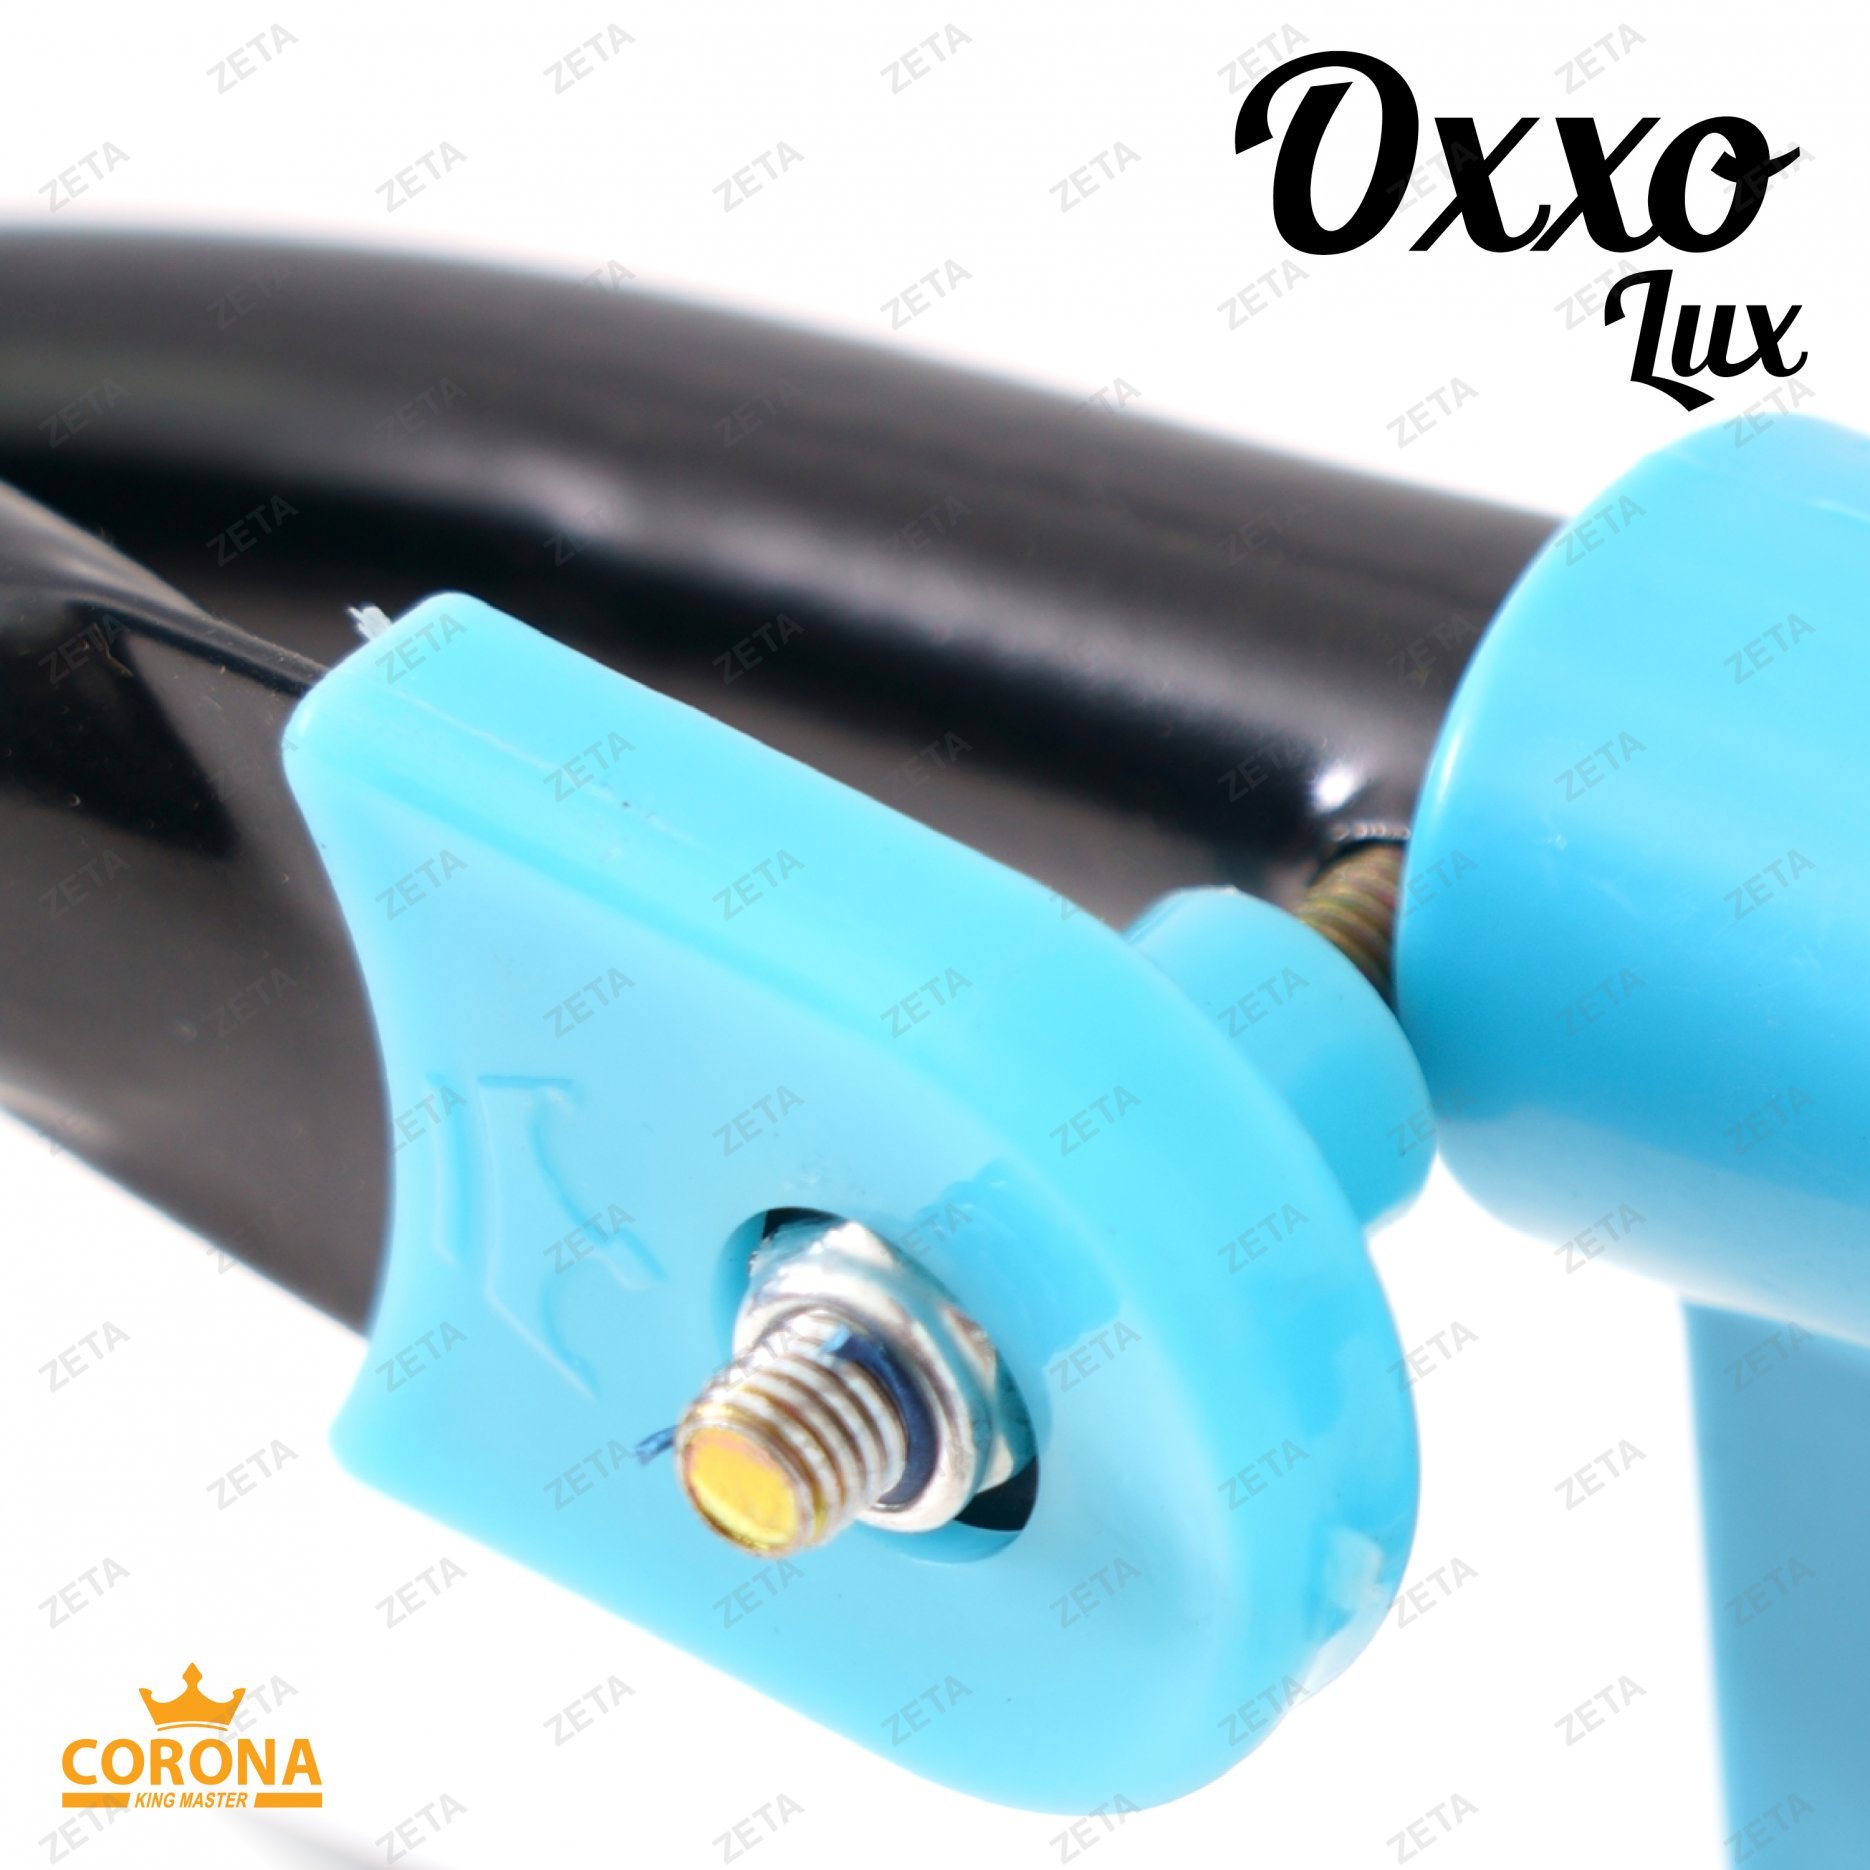 Сушилка для белья "Oxxo lux" №KRT/17-002 - изображение 3